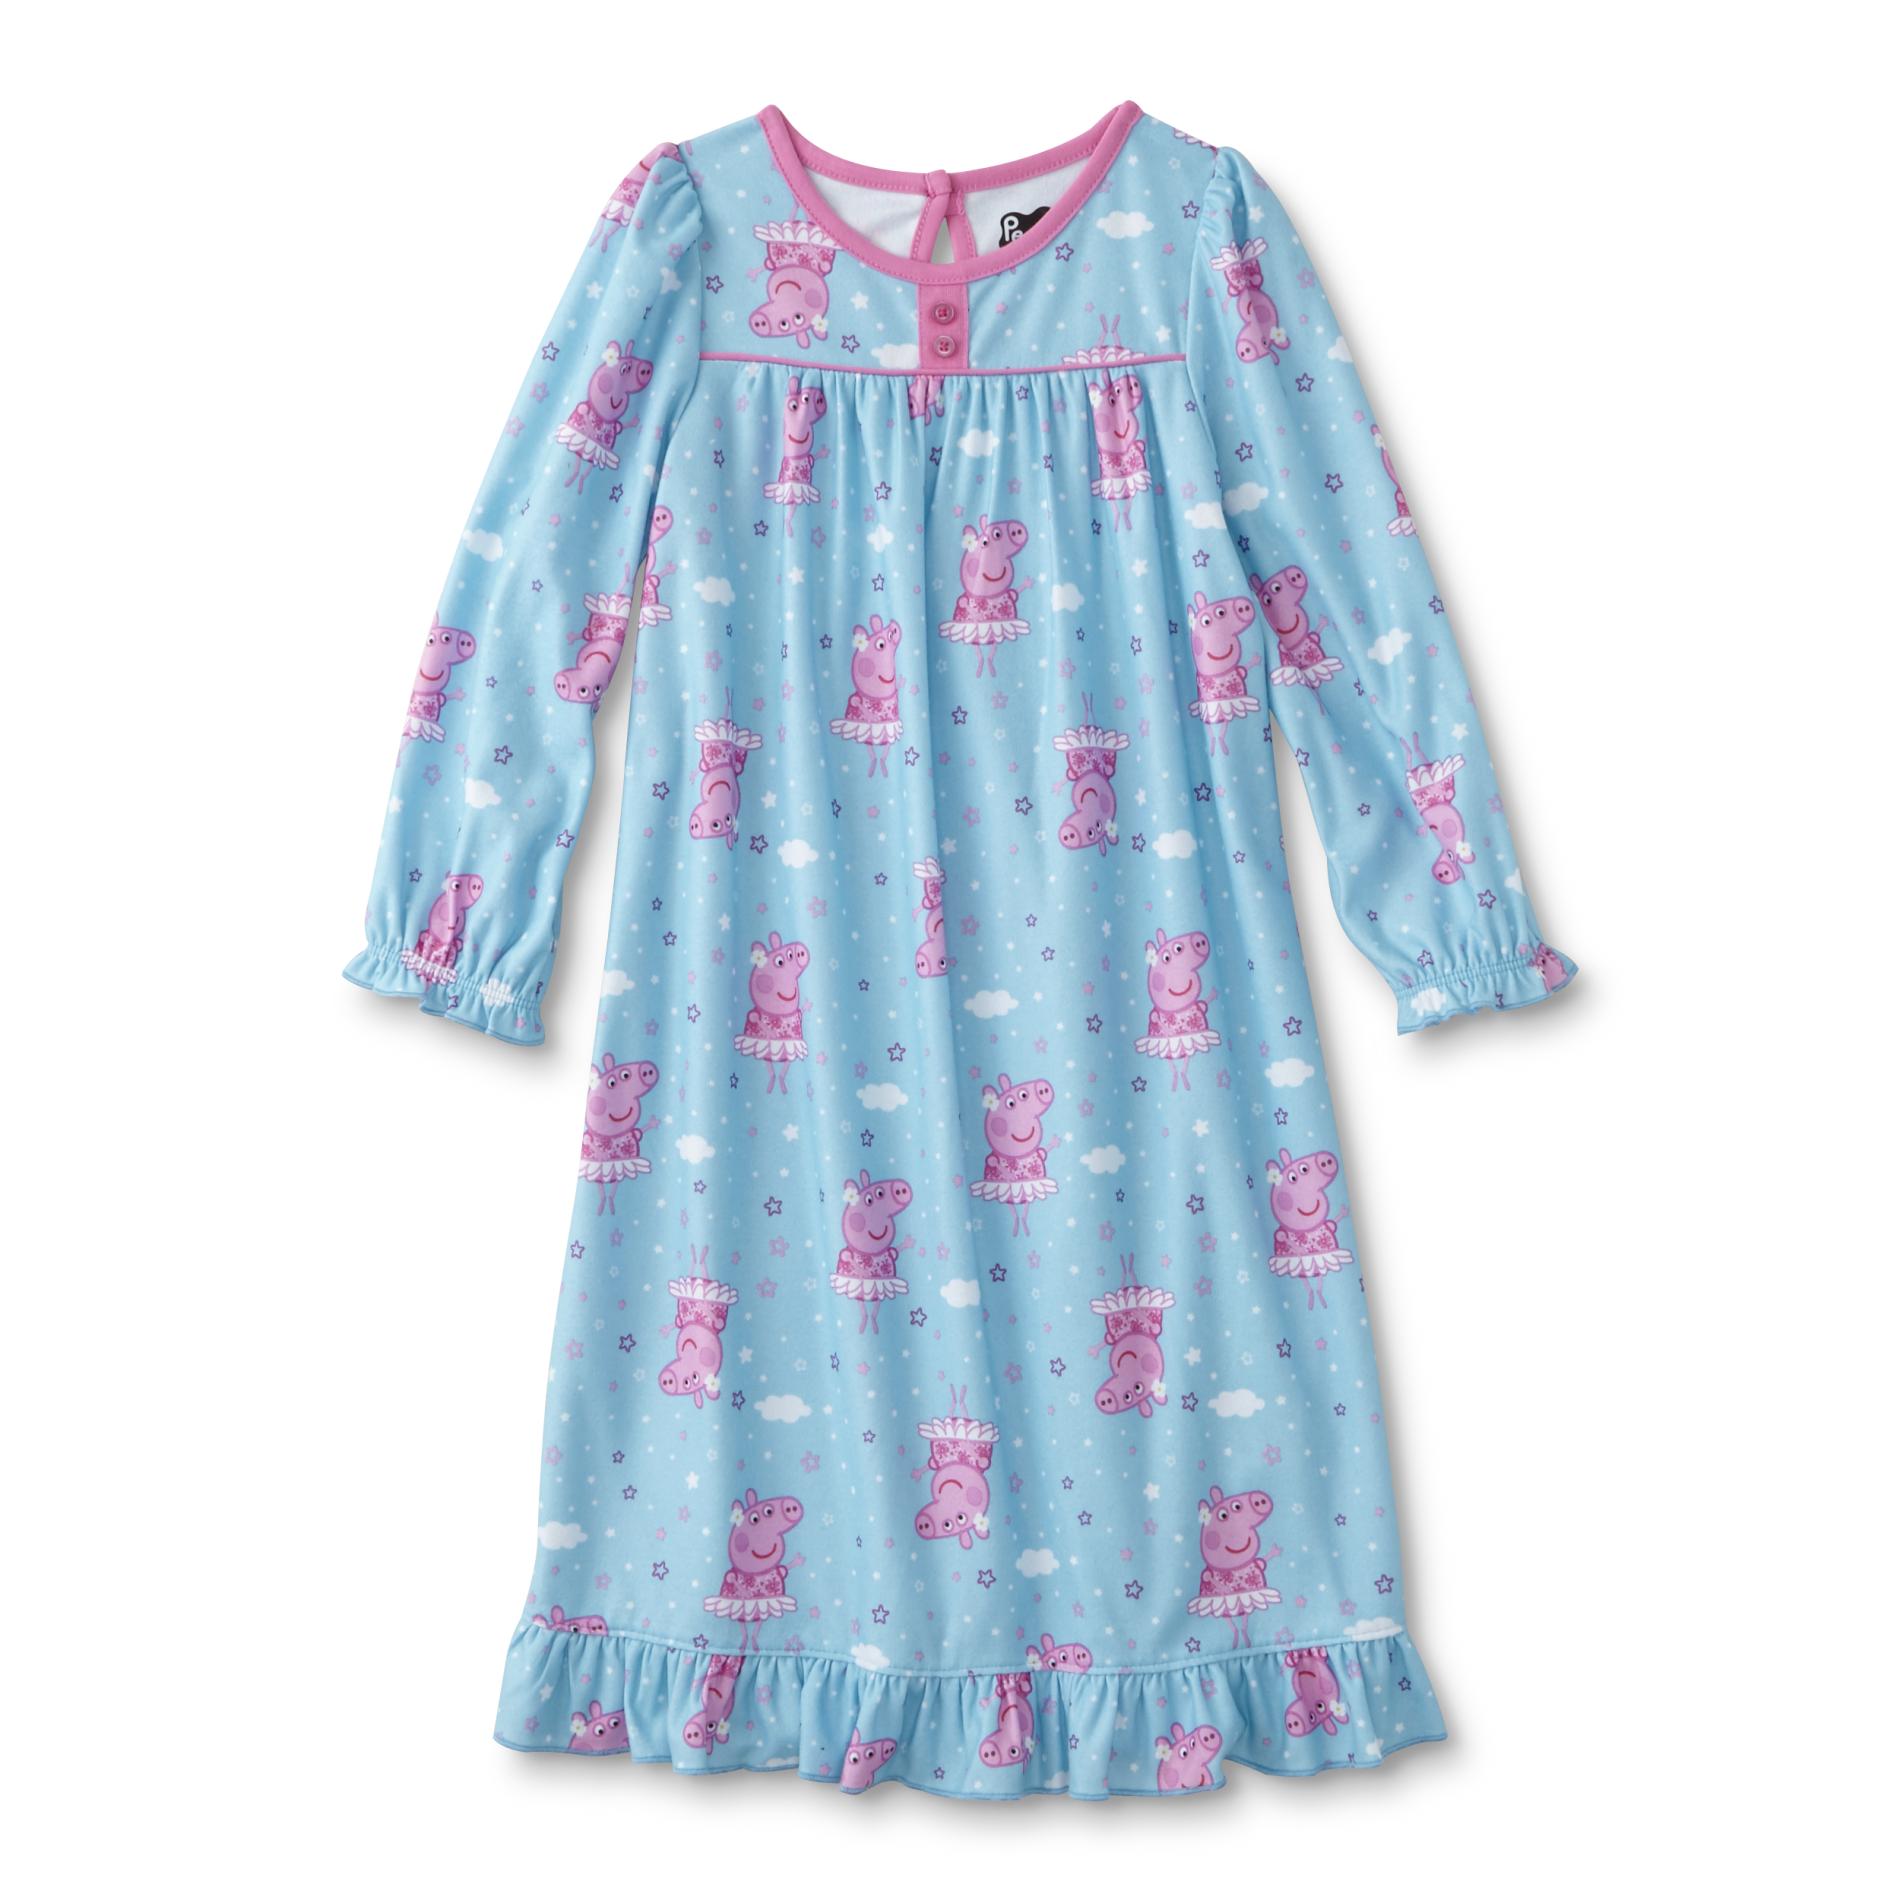 Nickelodeon Toddler Girls' Nightgown